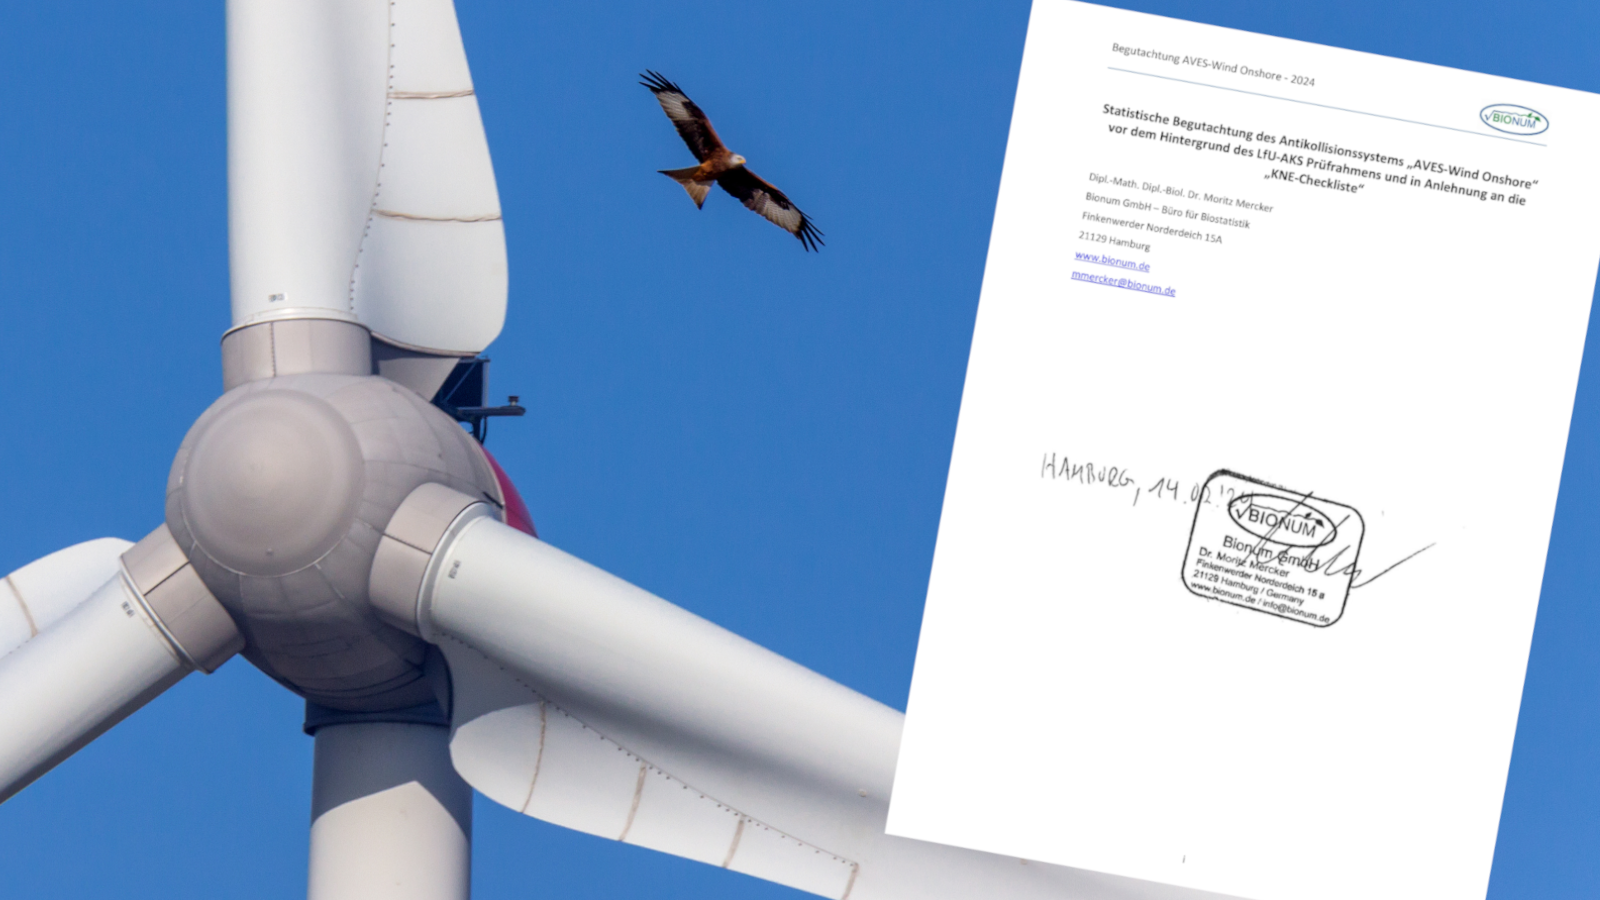 Eine Fotocollage: Ein Rotmilan fliegt hinter einem Windrad. Auf der rechten Seite des Bildes ist das Titelblatt der Wirksamkeitsstudie zum Antikollisionssystem AVES montiert.